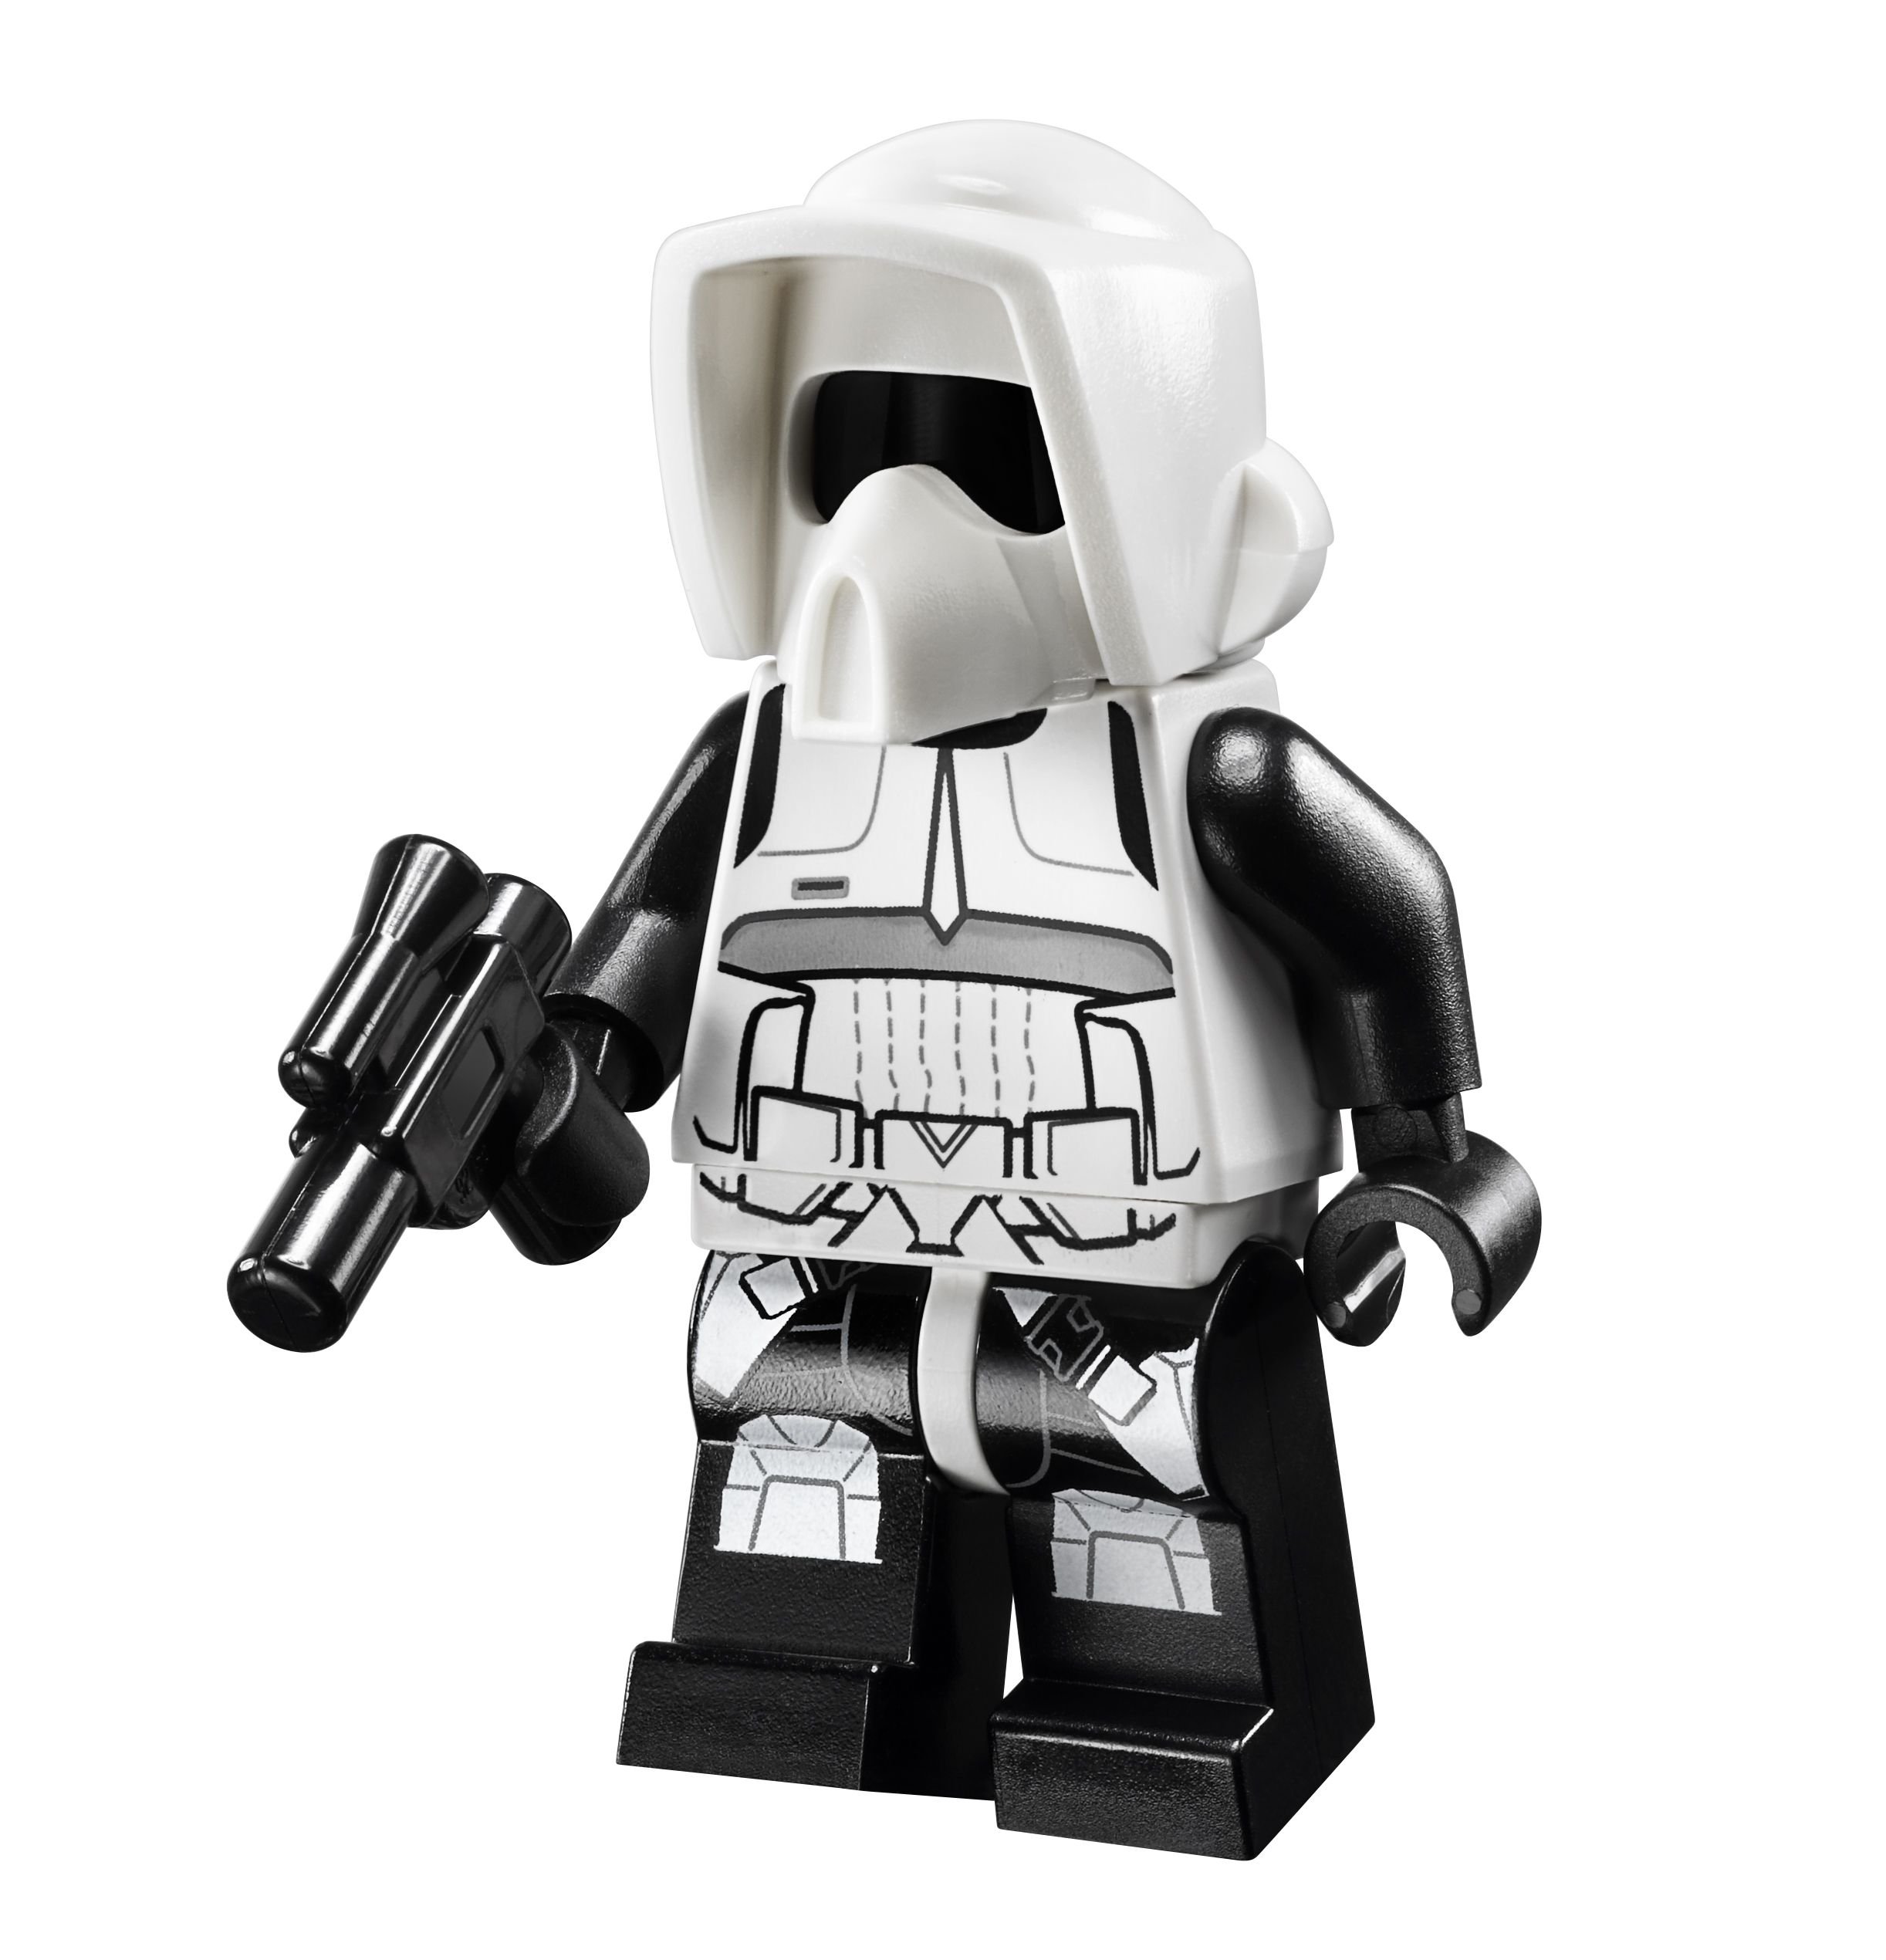 LEGO Star Wars 10236 Ewok™ Village 10236_1to1_0015_Scouttrooper.jpg